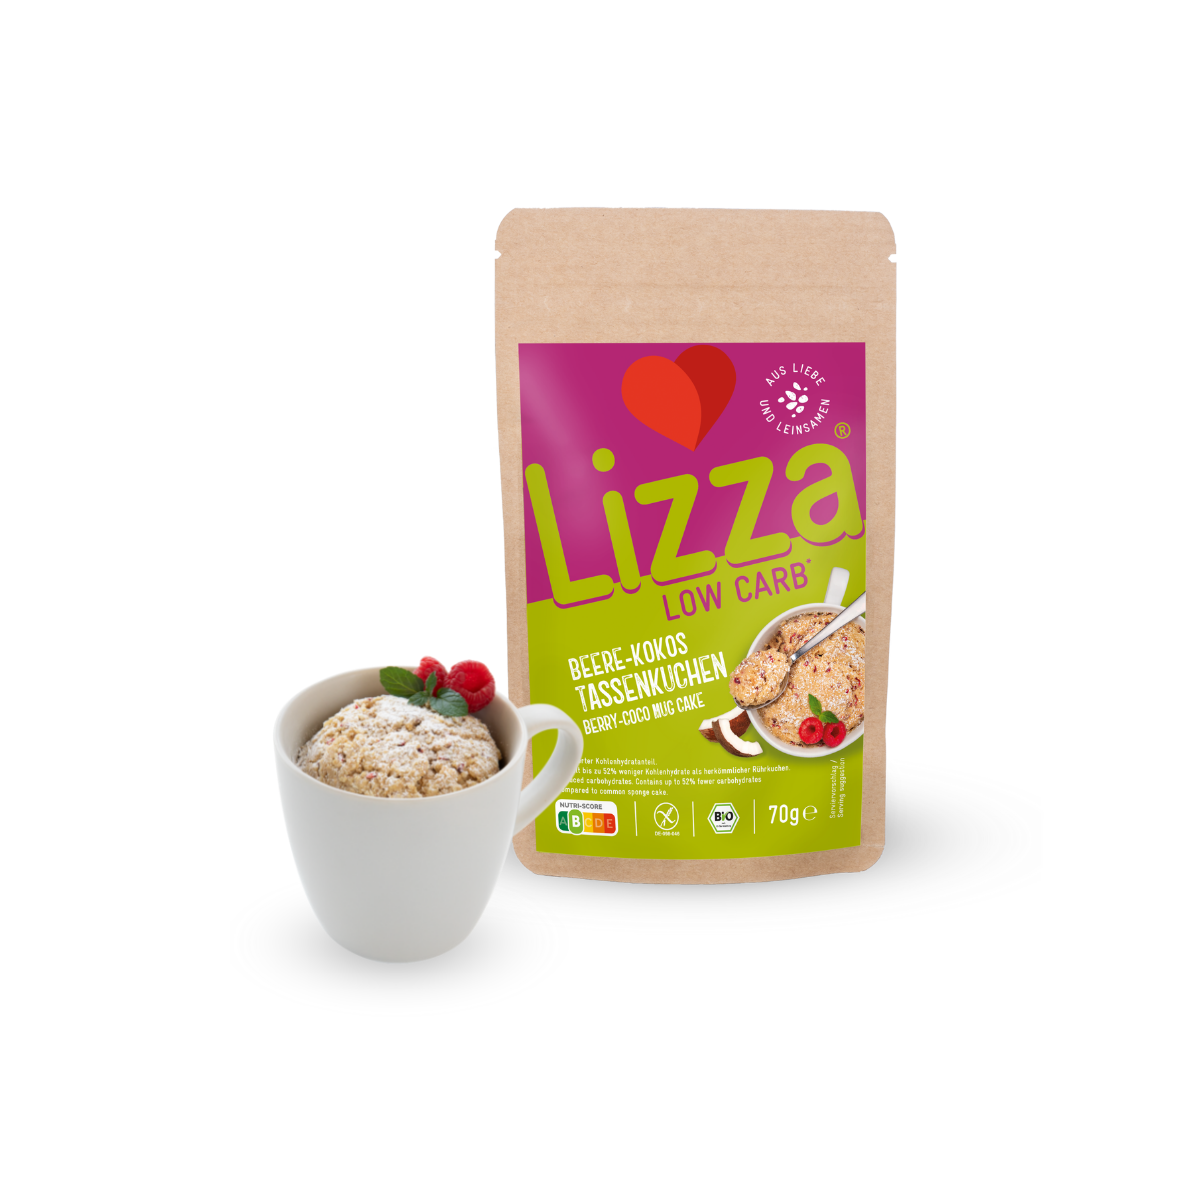 Lizza Beere-Kokos Tassenkuchen » Gluten Free